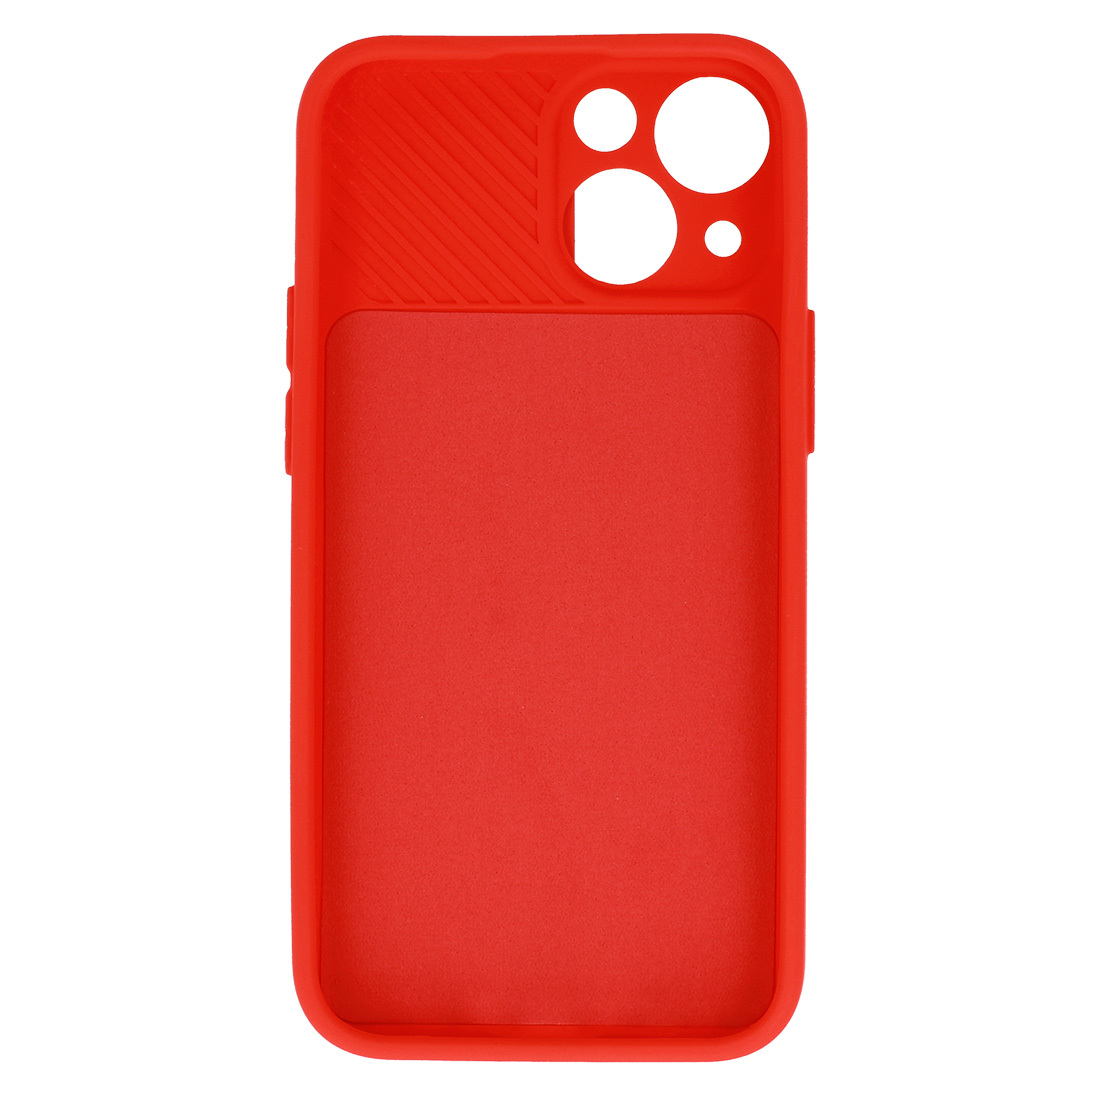 Pokrowiec etui z elastycznego TPU Camshield Soft Case czerwone APPLE iPhone 8 Plus / 5